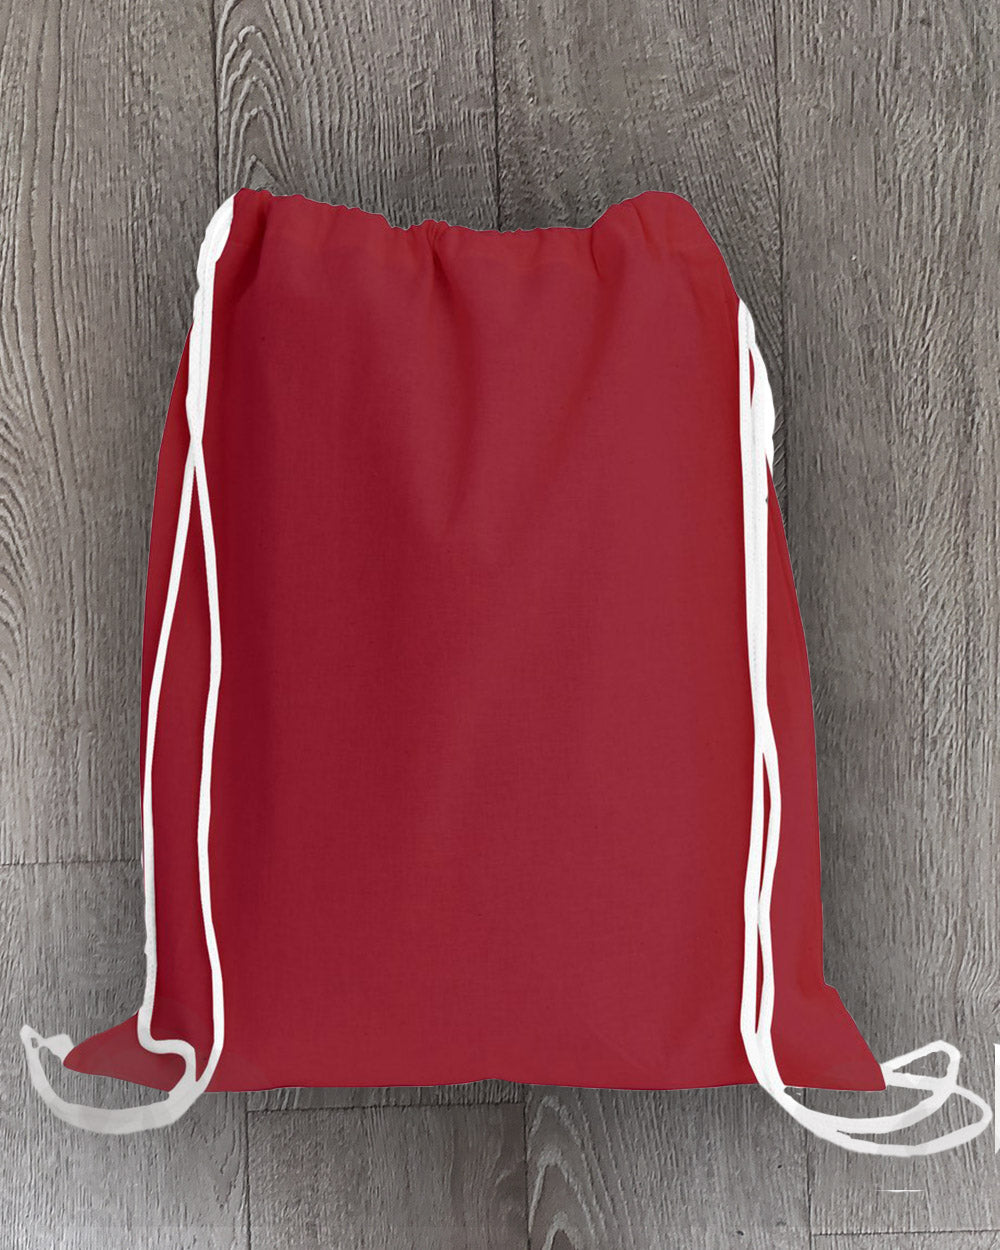 12 ct Blank 100% Cotton Drawstring Backpacks for Santa Sacks Bulk - By Dozen